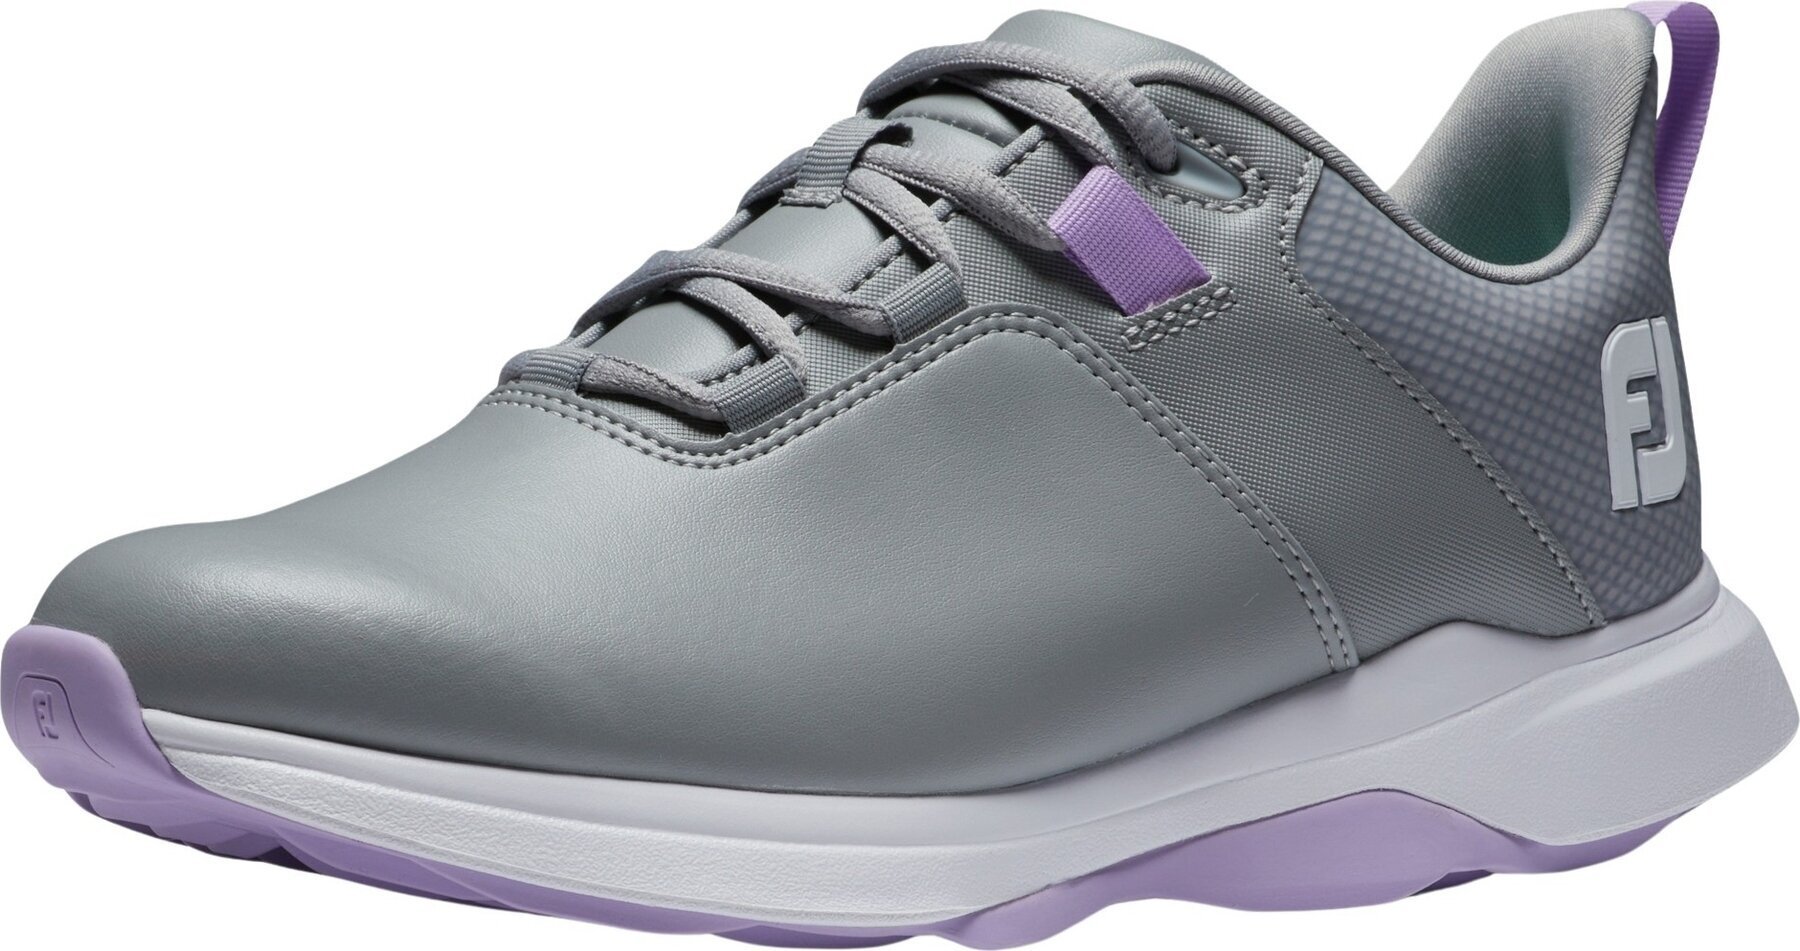 Chaussures de golf pour femmes Footjoy ProLite Womens Golf Shoes Grey/Lilac 38,5